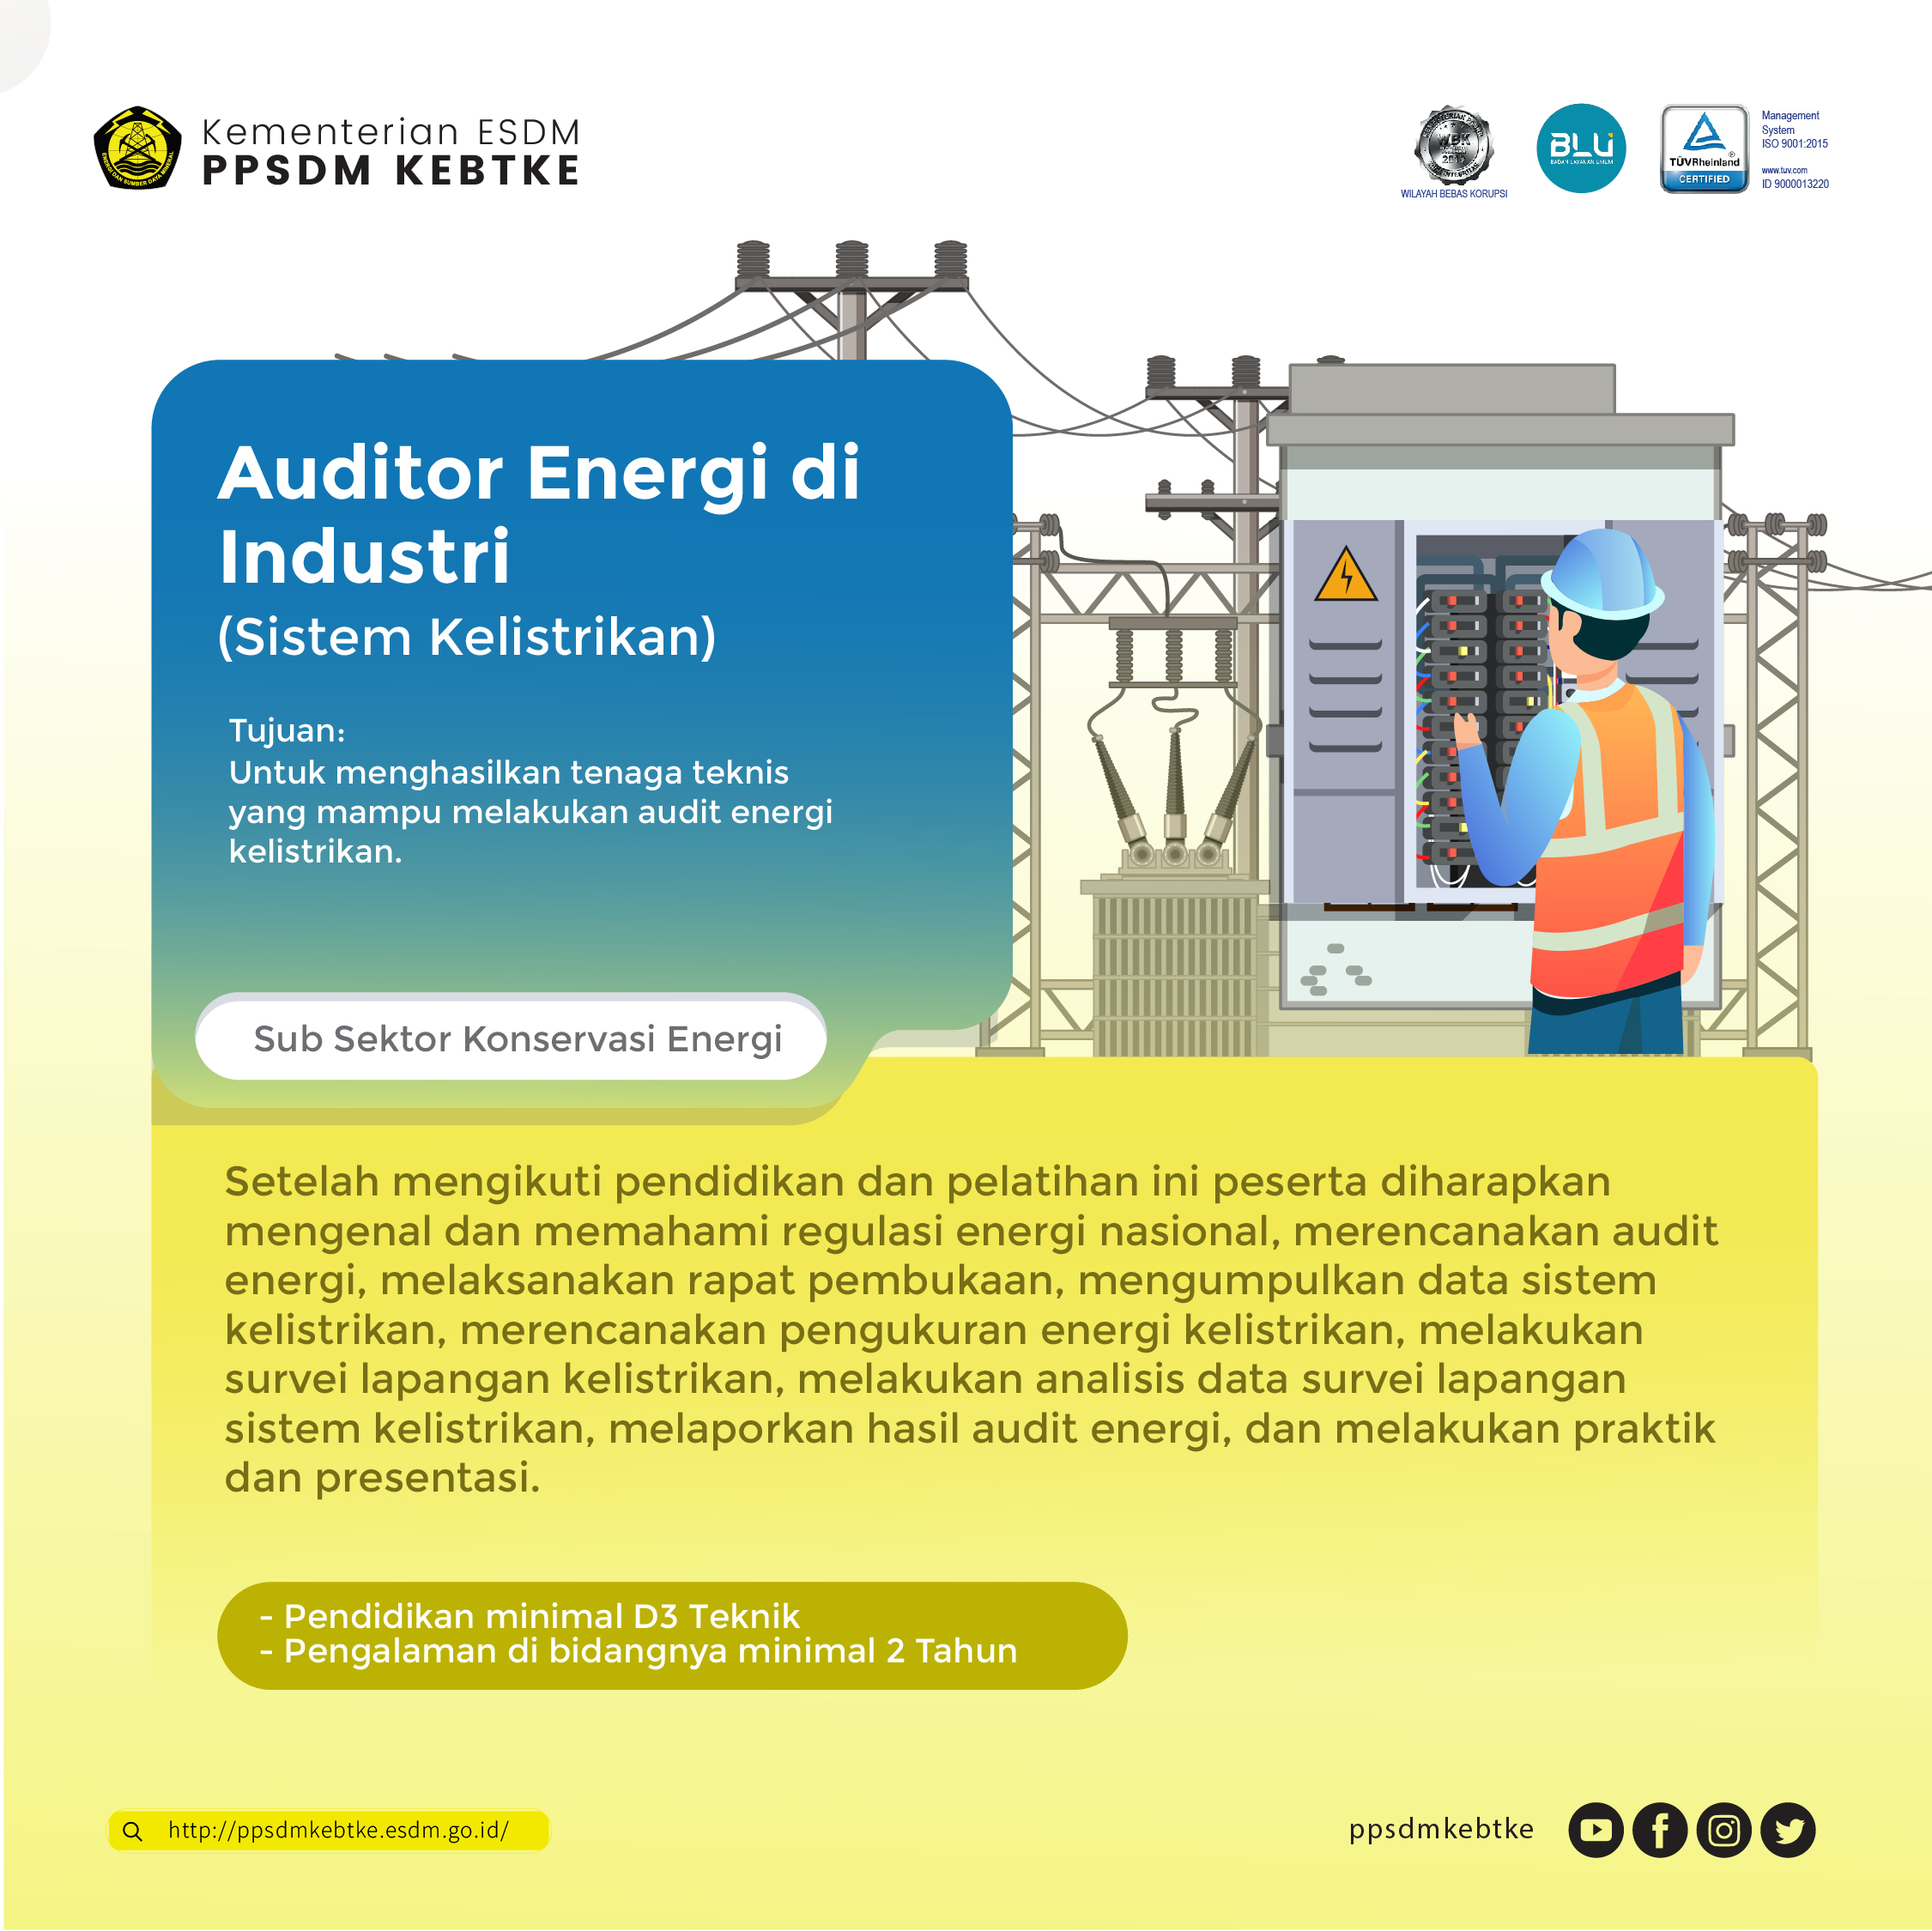 Auditor Energi di Industri (Sistem Kelistrikan)